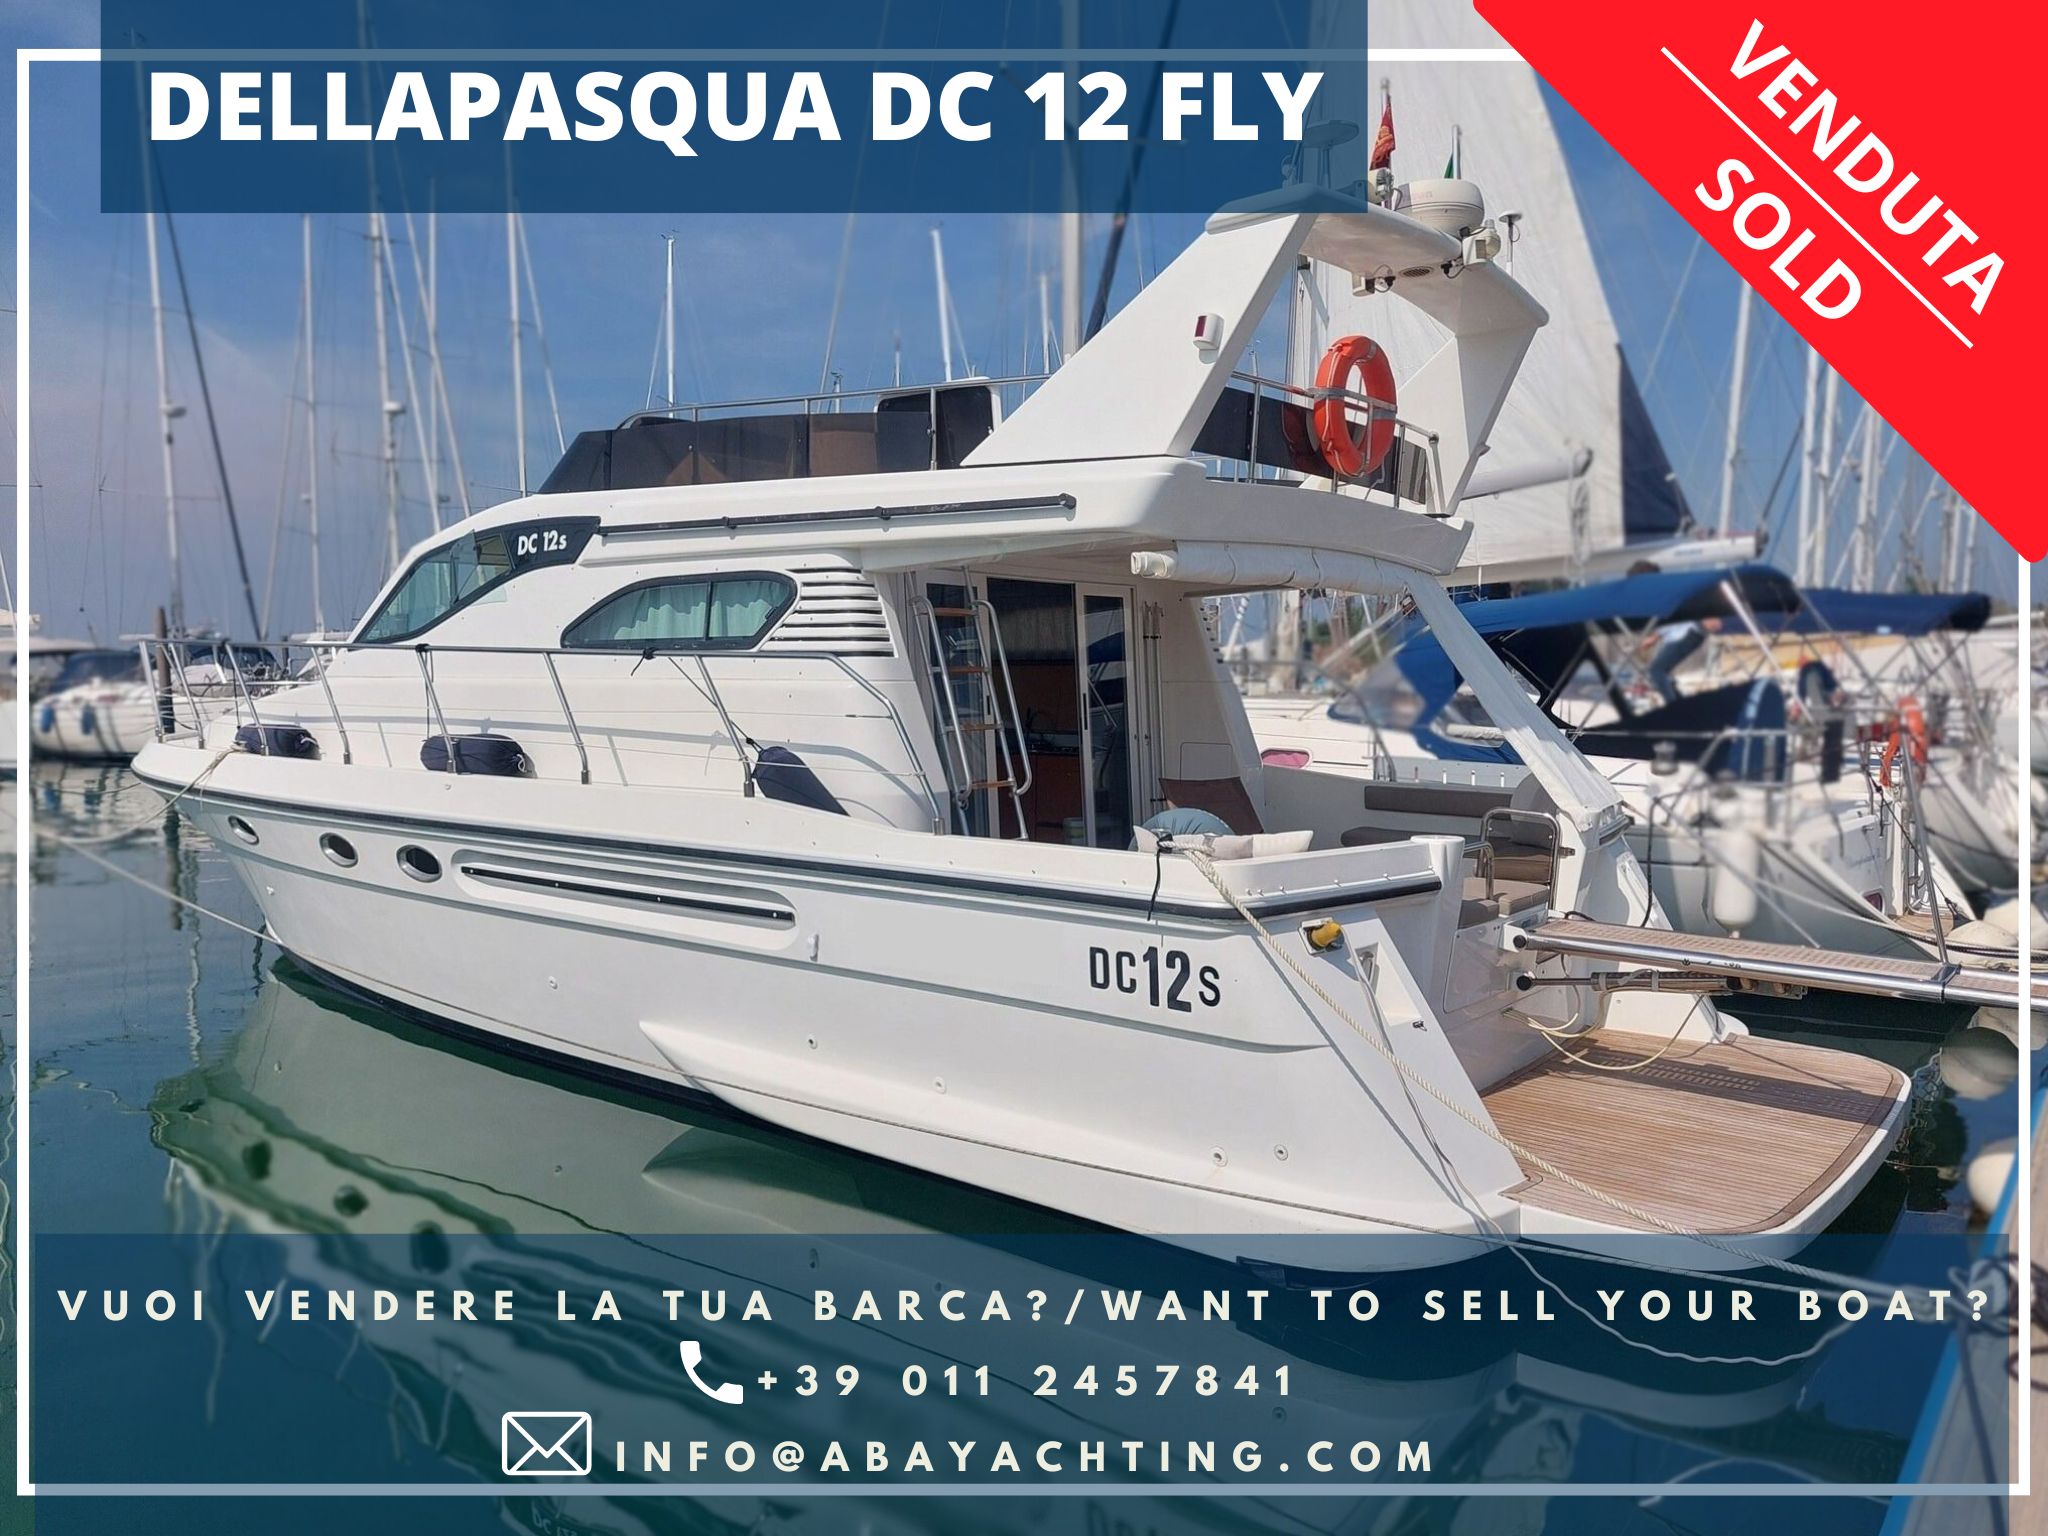 DellaPasqua Dc 12 Fly sold